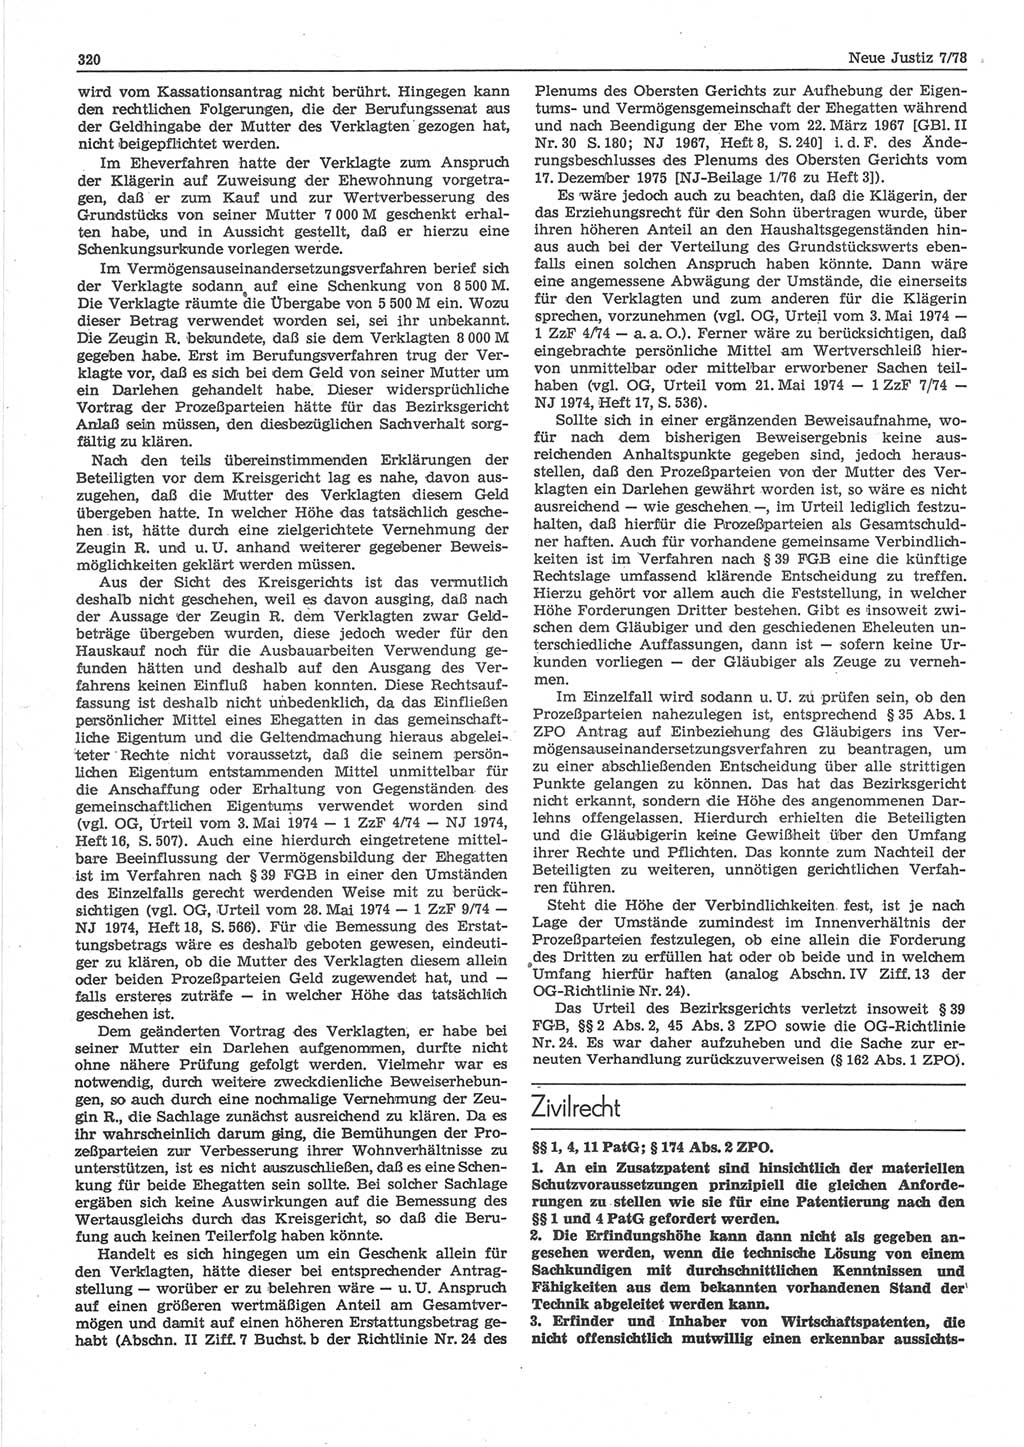 Neue Justiz (NJ), Zeitschrift für sozialistisches Recht und Gesetzlichkeit [Deutsche Demokratische Republik (DDR)], 32. Jahrgang 1978, Seite 320 (NJ DDR 1978, S. 320)